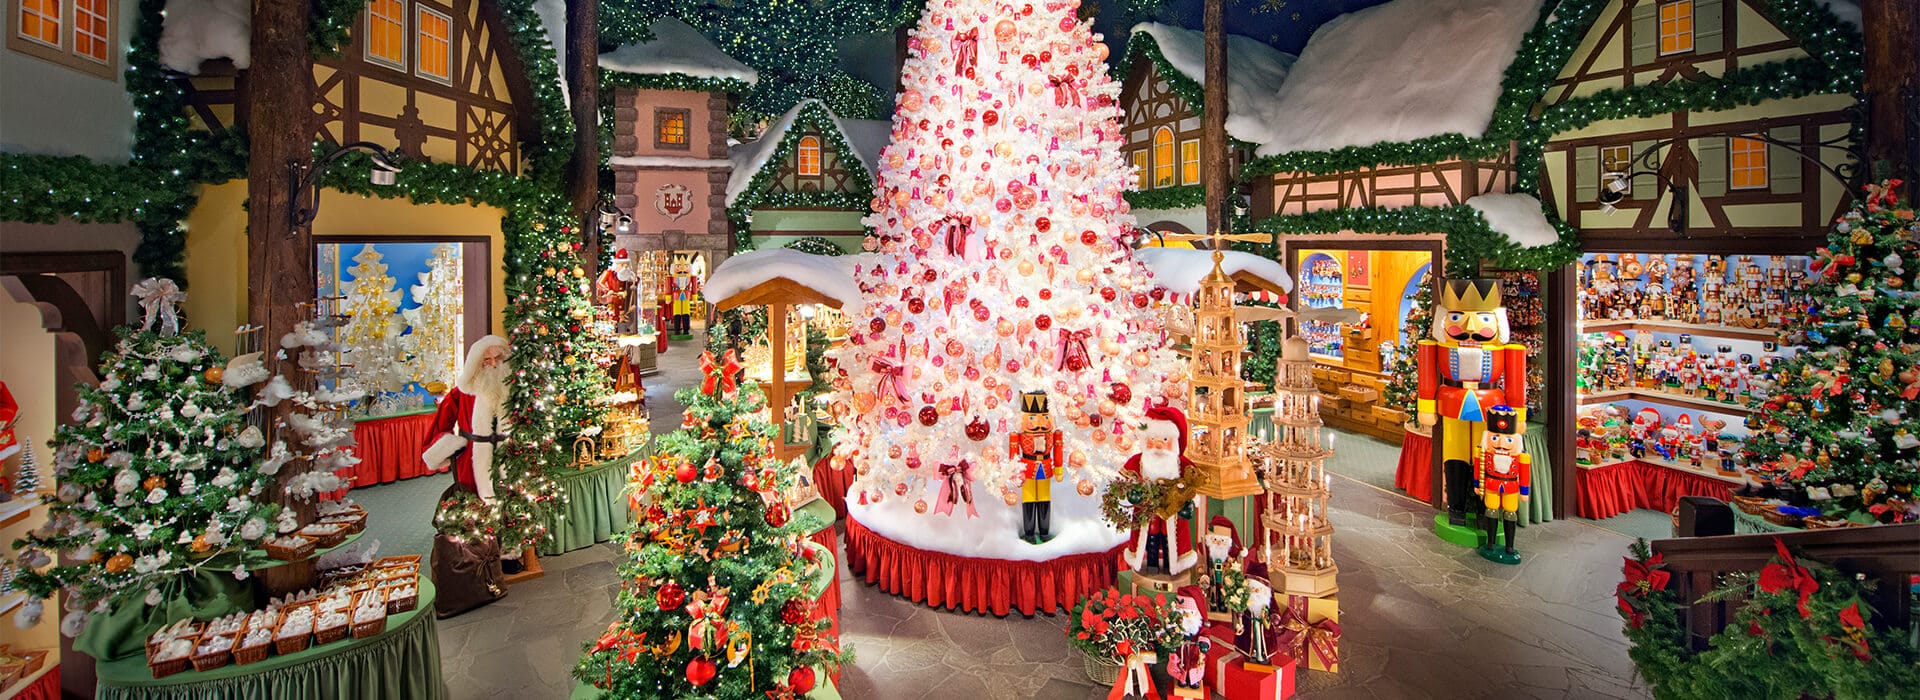 A tradição das decorações natalinas na Alemanha -